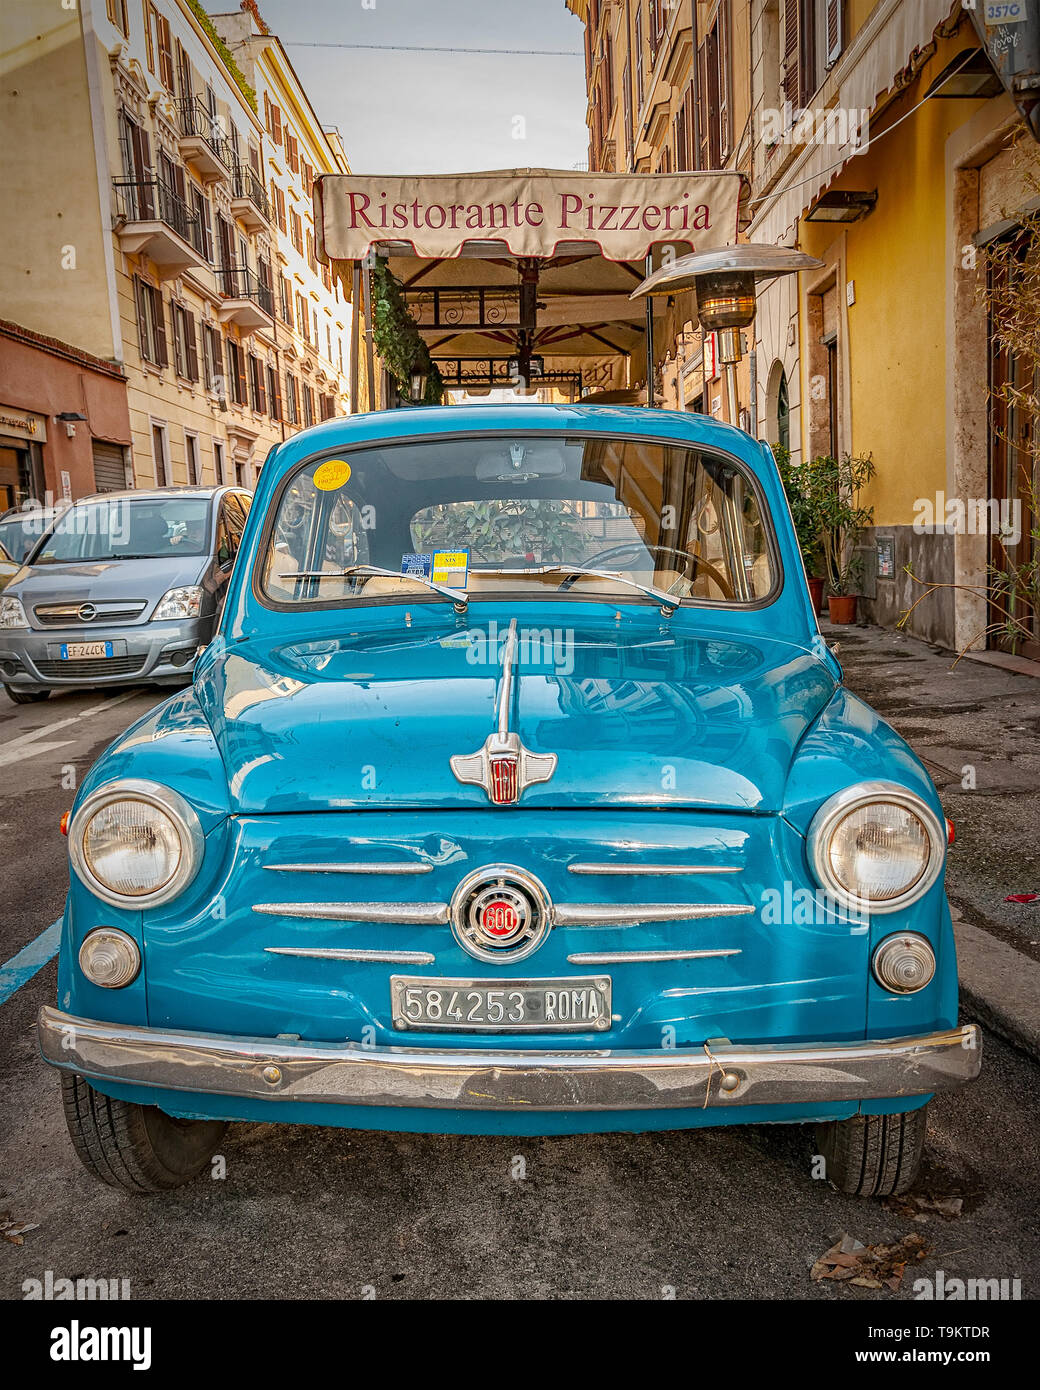 Roma, Italia - 07 gennaio 2014: un classico azzurro Fiat 600 parcheggiato in una strada di Roma, Italia. Foto Stock